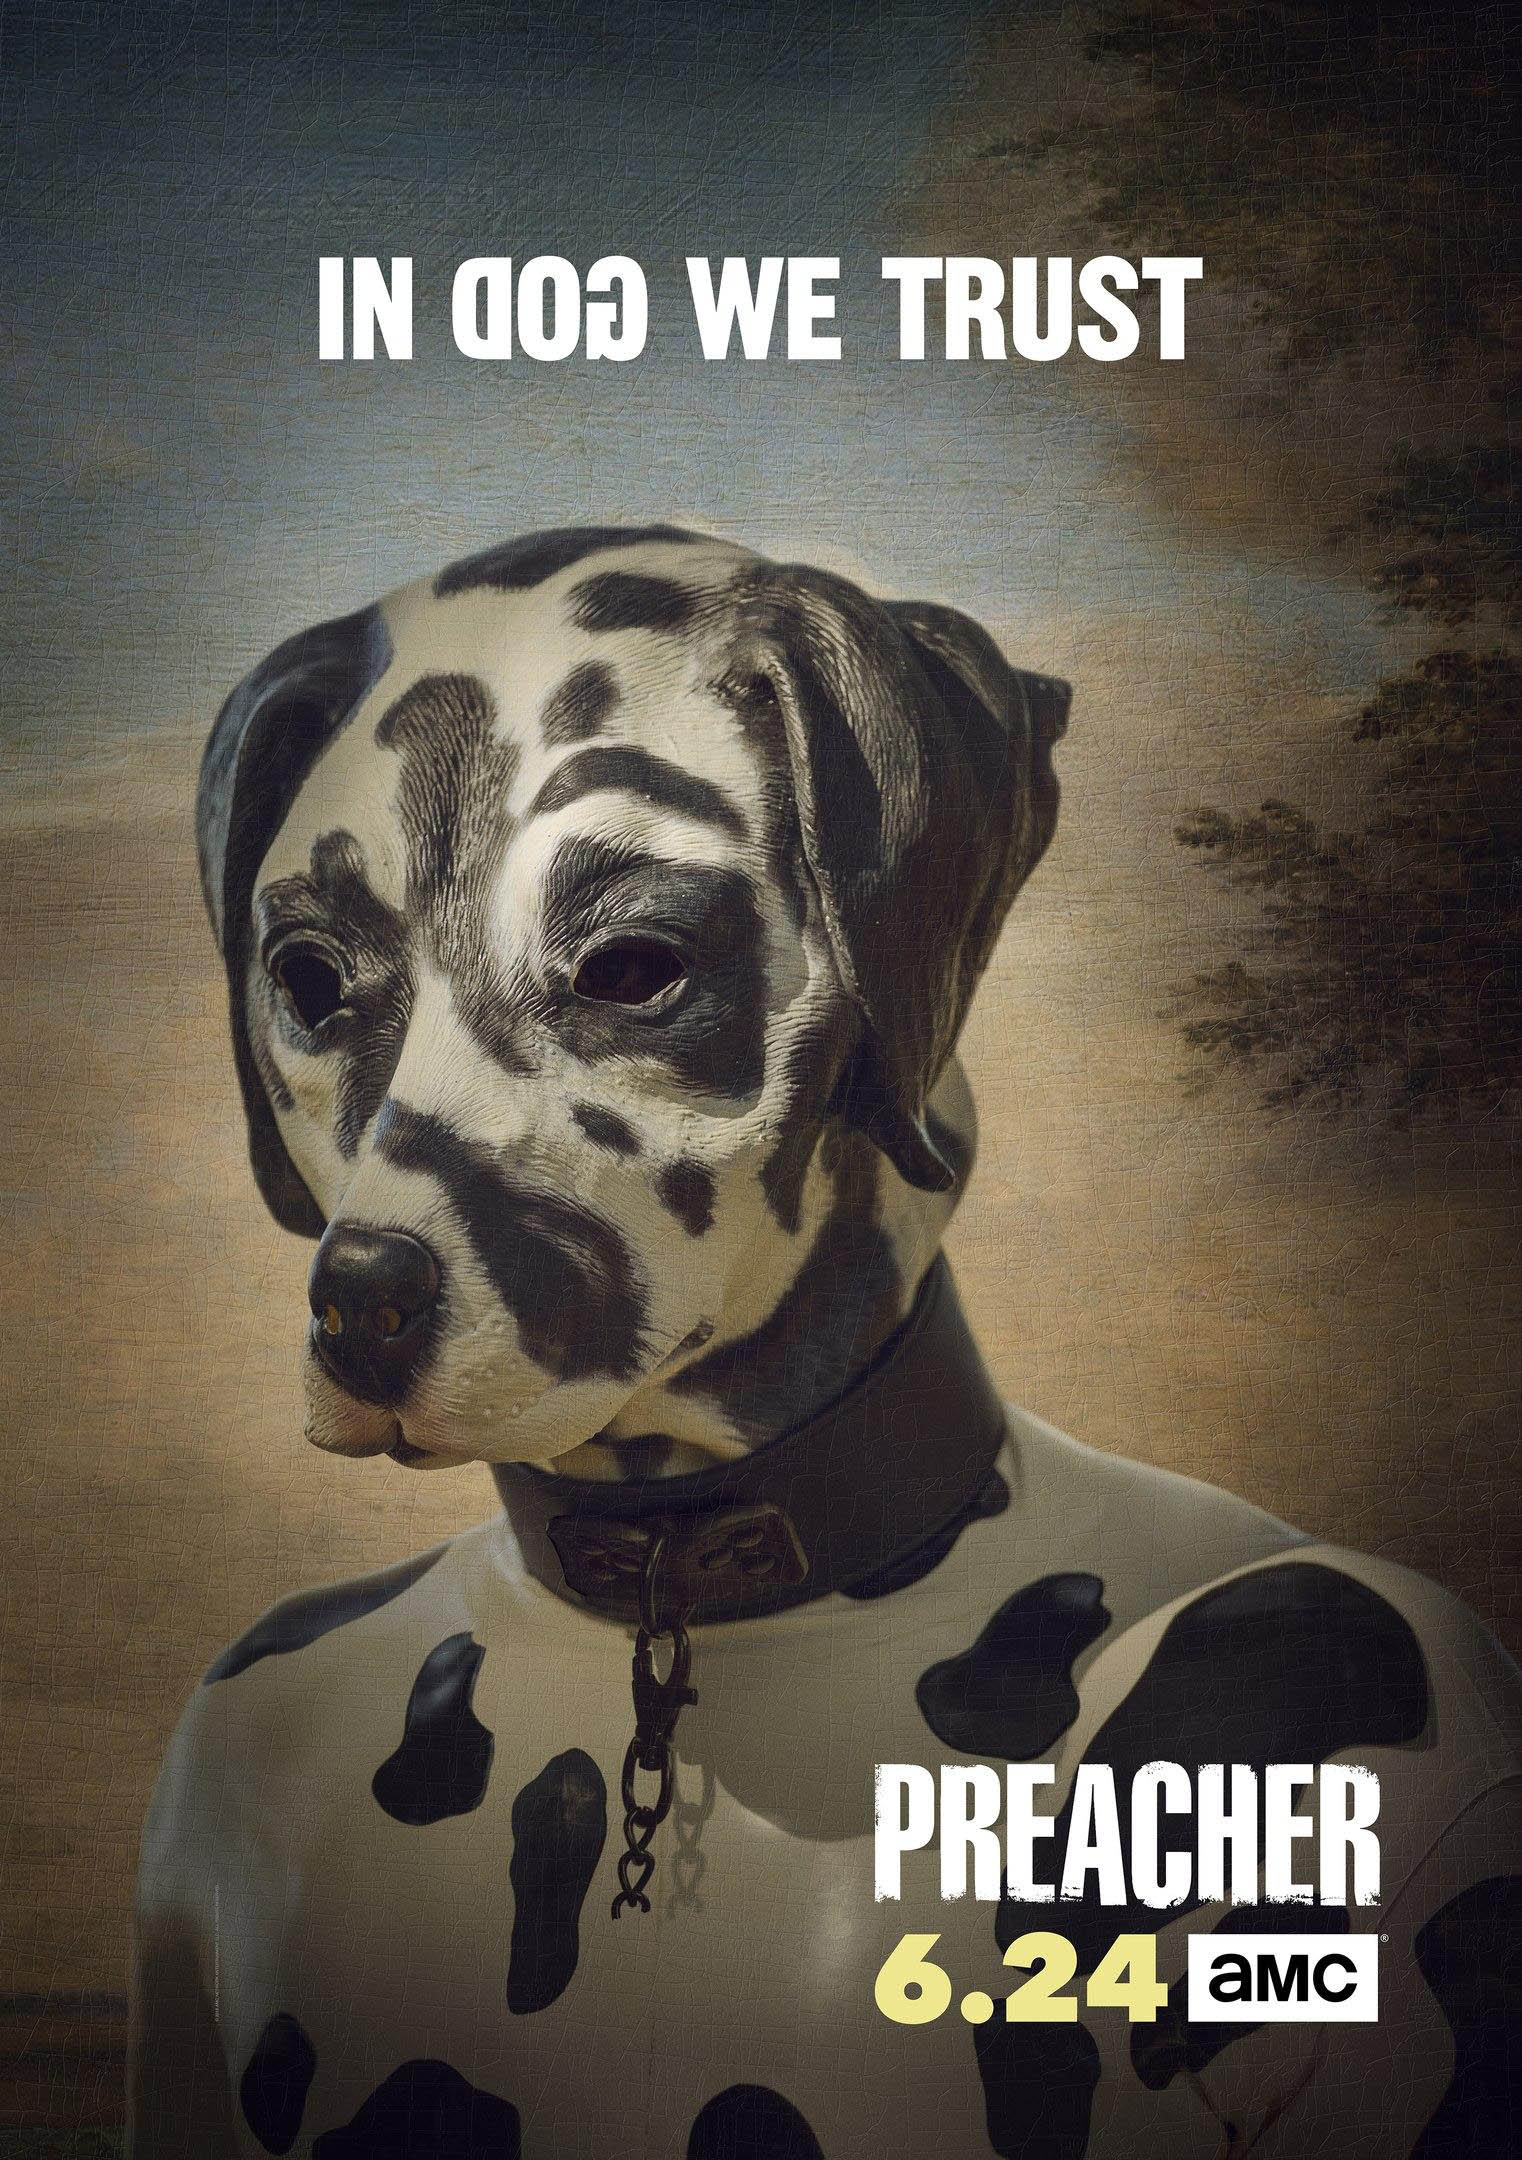 preacher-season-3-promotional-poster_FULL.jpg